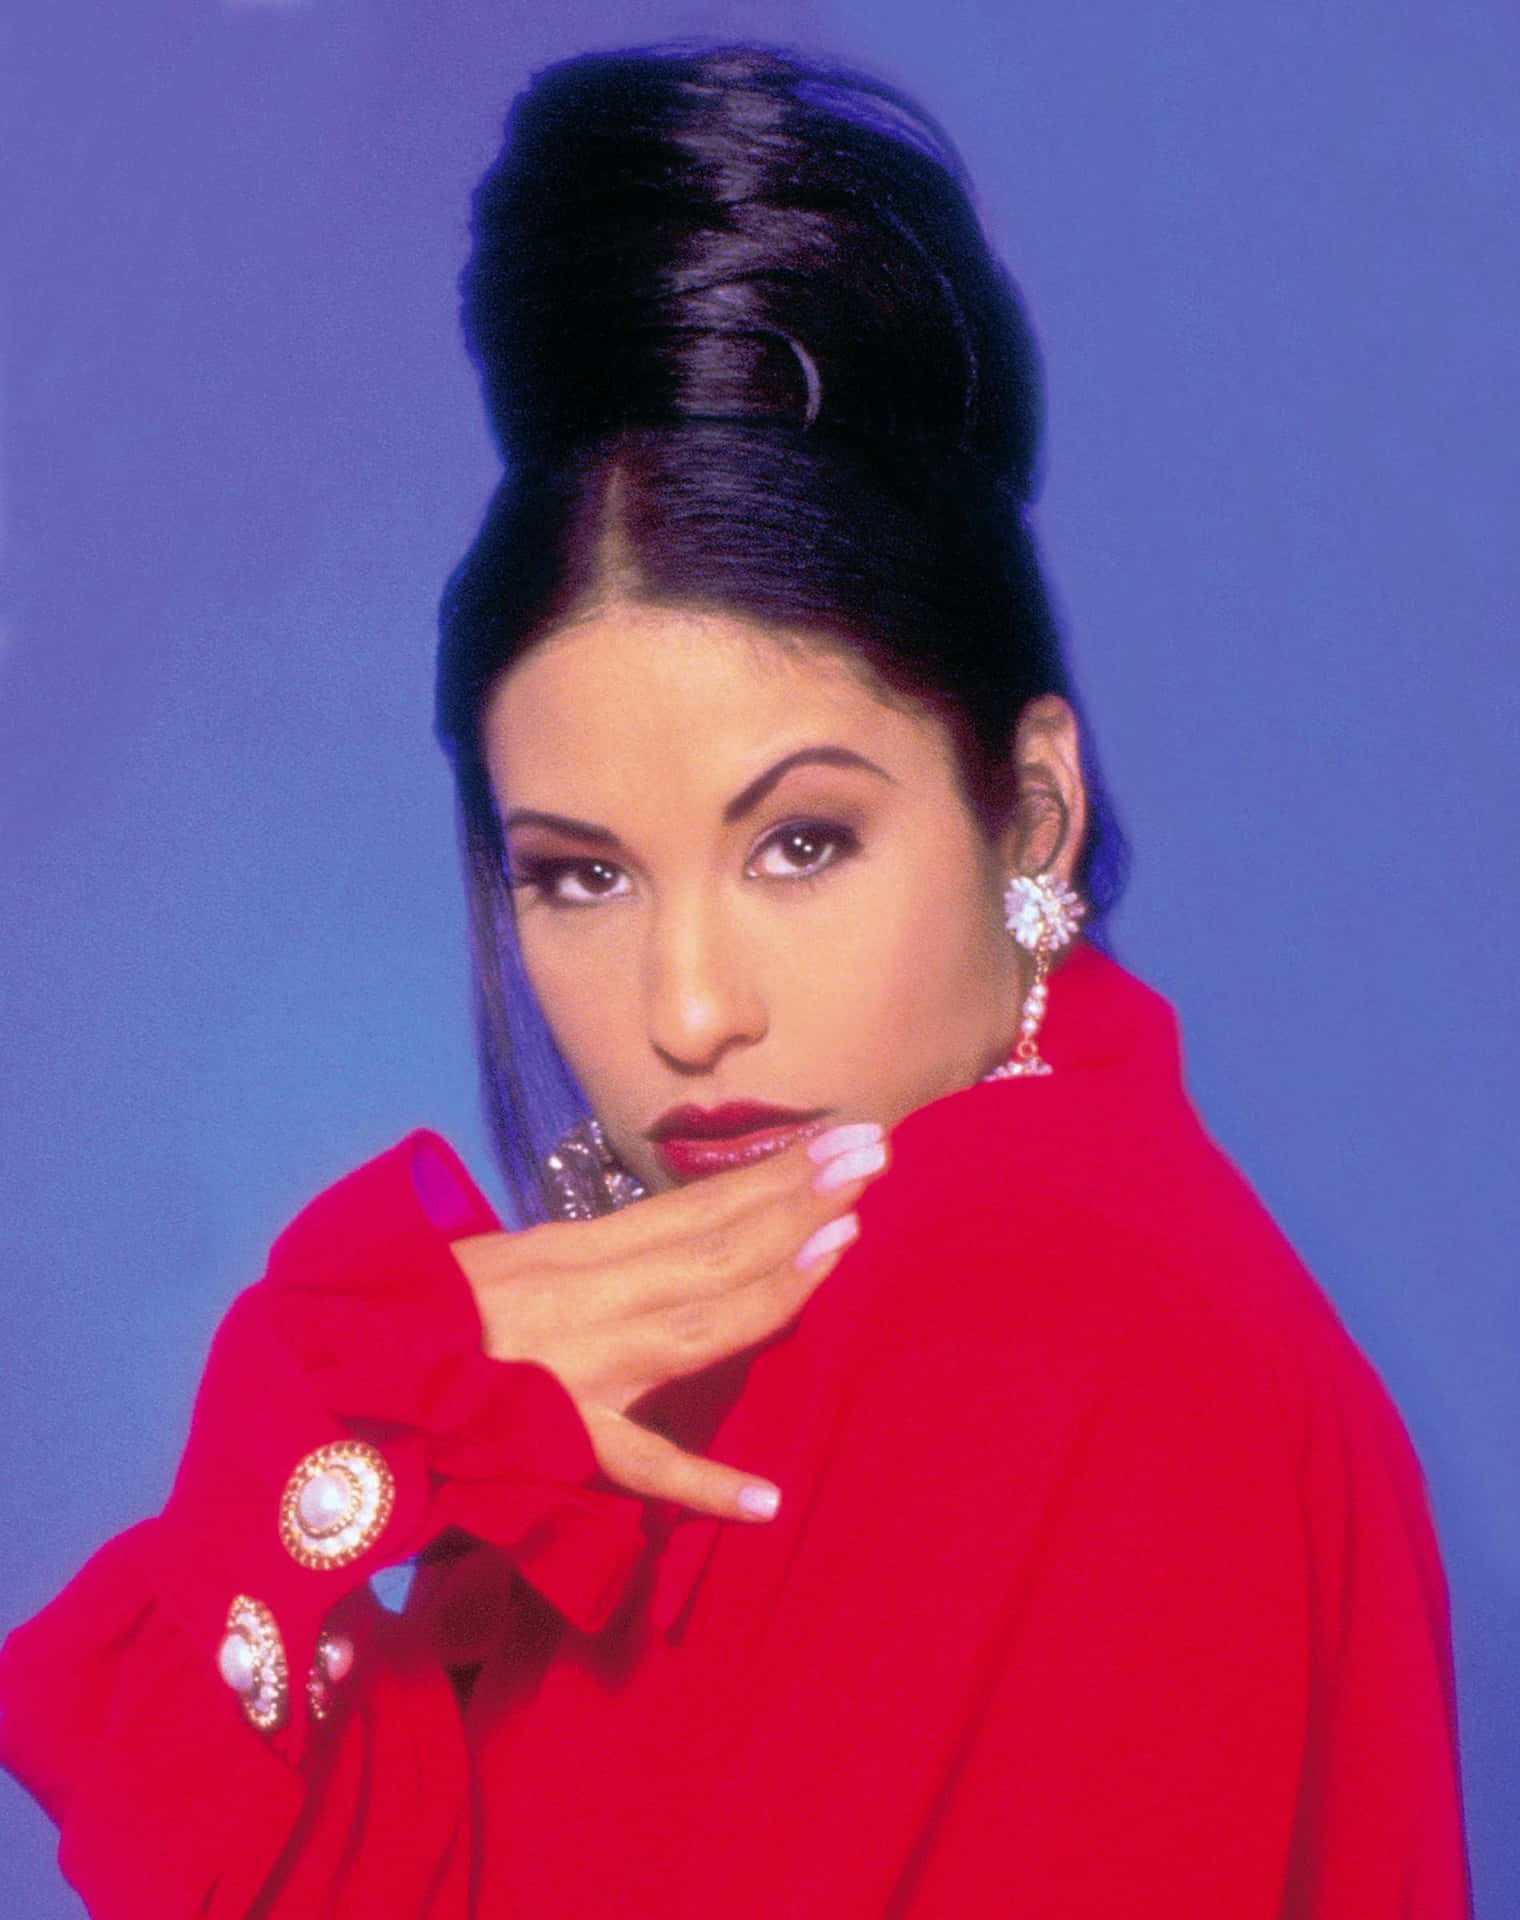 Zeigensie Ihre Liebe Für Die Königin Der Tejano-musik, Selena Quintanilla, Mit Ihrem Ikonischen Bild Auf Ihrem Iphone. Wallpaper